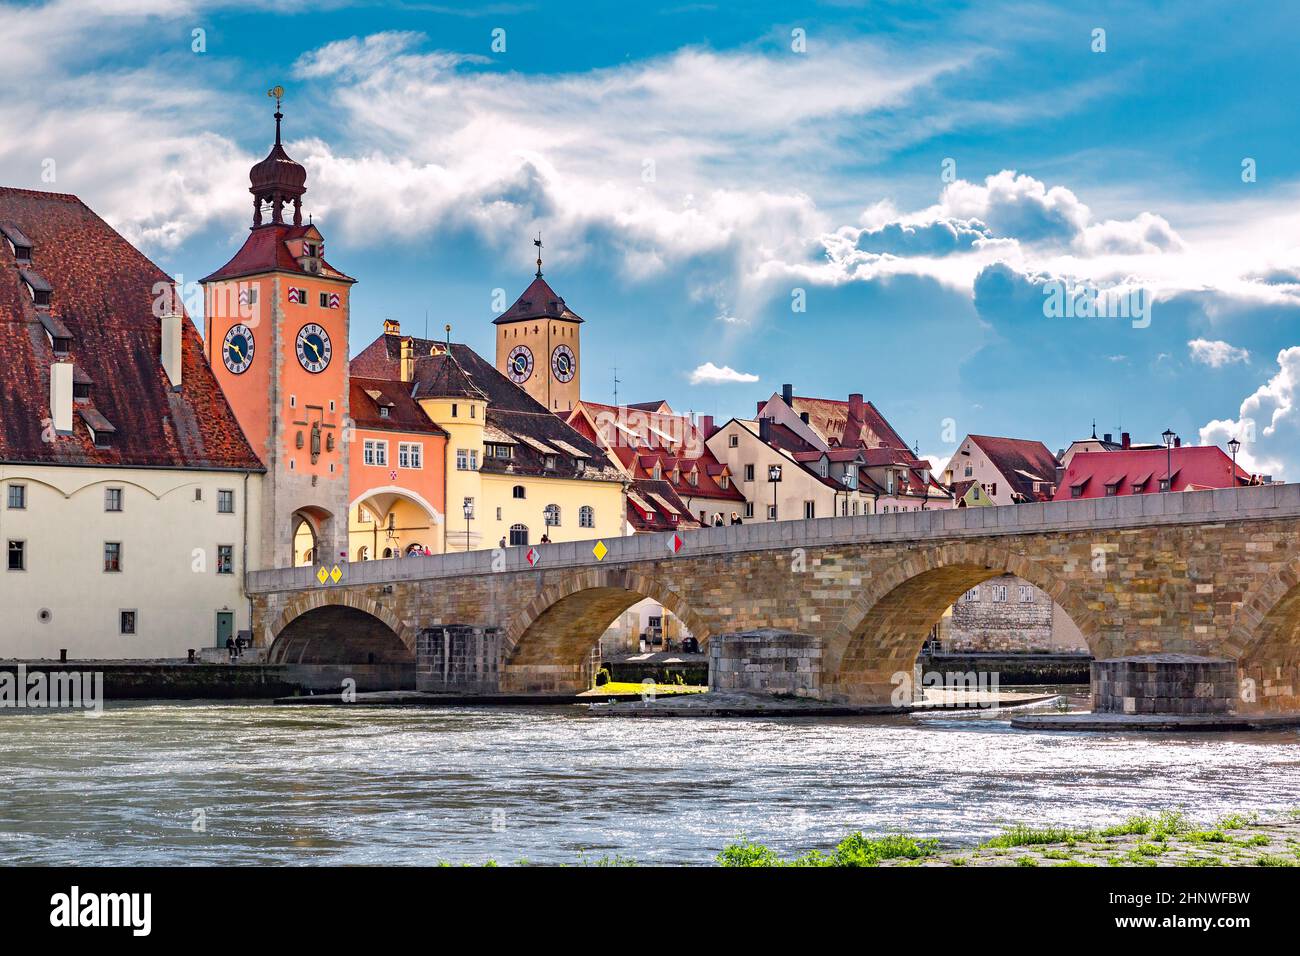 Puente de piedra y la torre del puente de Regensburg, Regensburg, Baviera oriental, Alemania Foto de stock